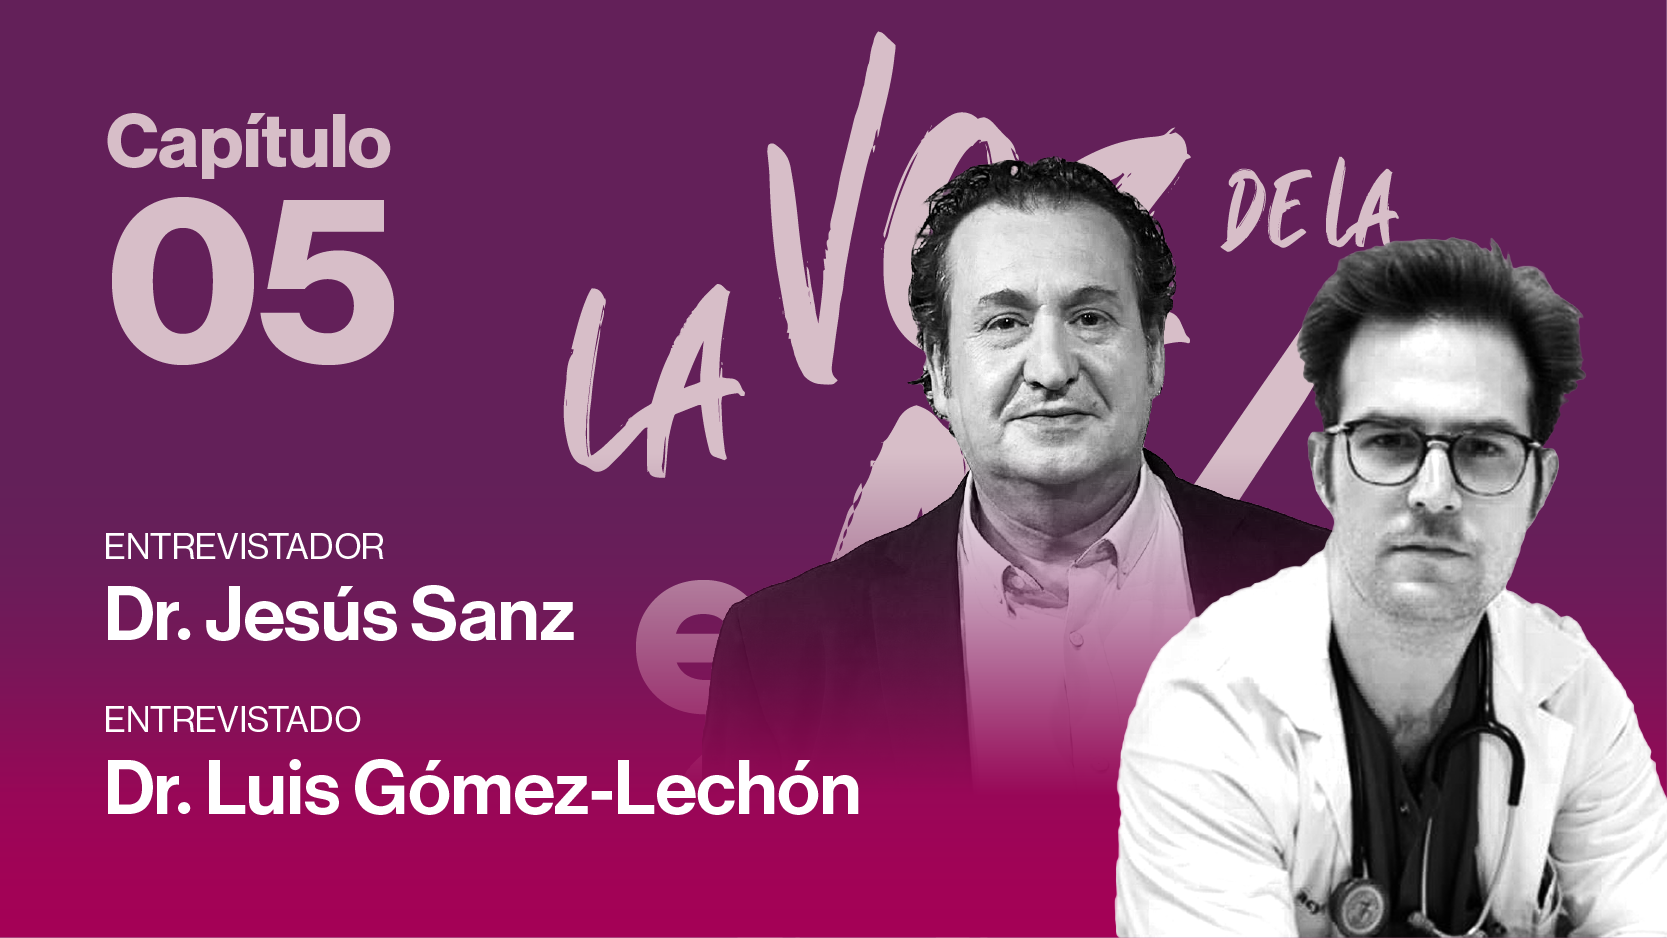 Capítulo 5 : Dr. Jesús Sanz y el Dr. Luis Gomez-Lechon